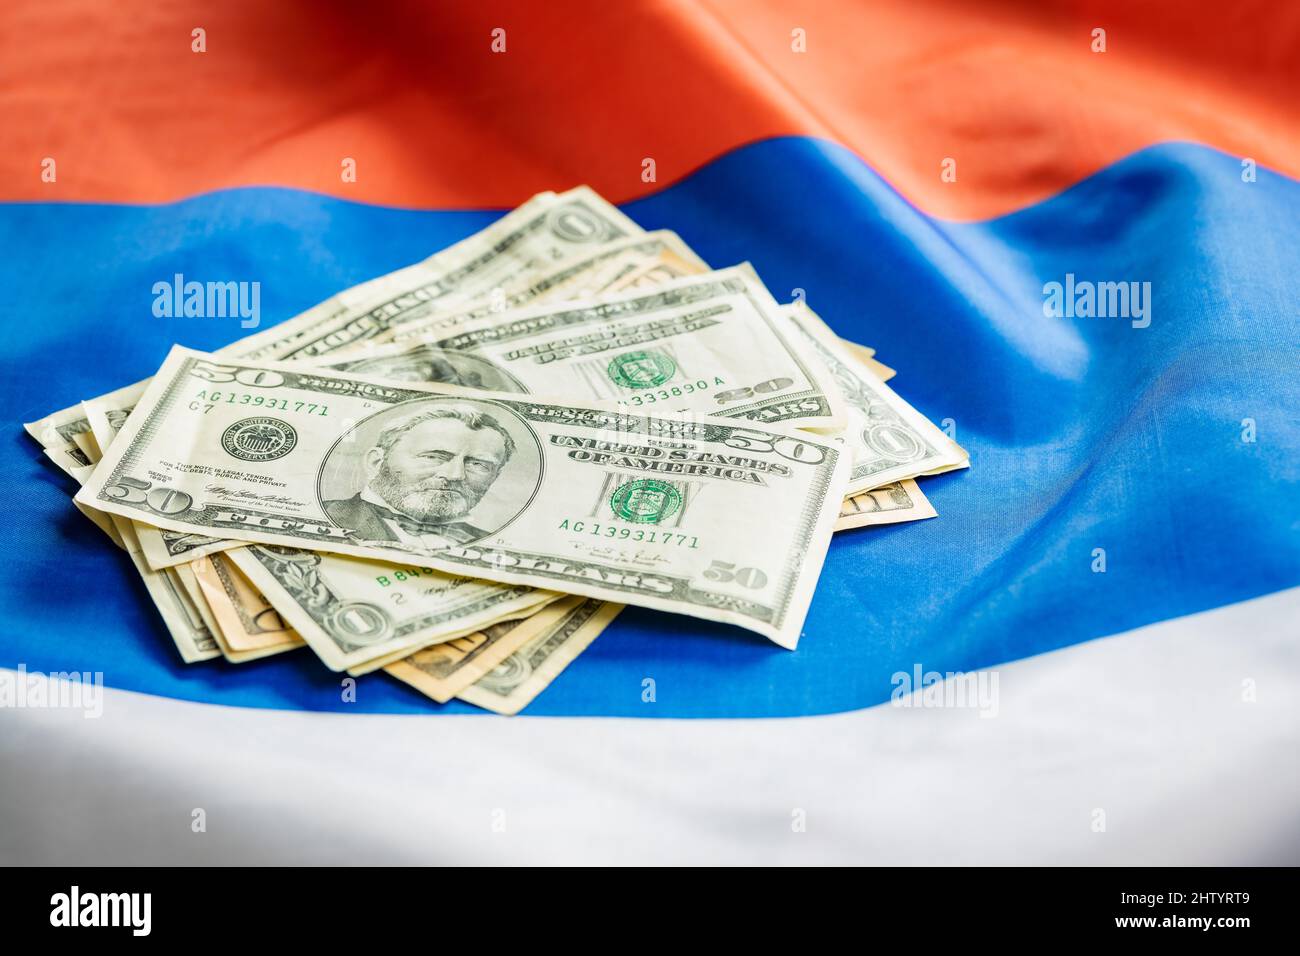 Billets EN dollars AMÉRICAINS mis sur le drapeau russe. Banque D'Images